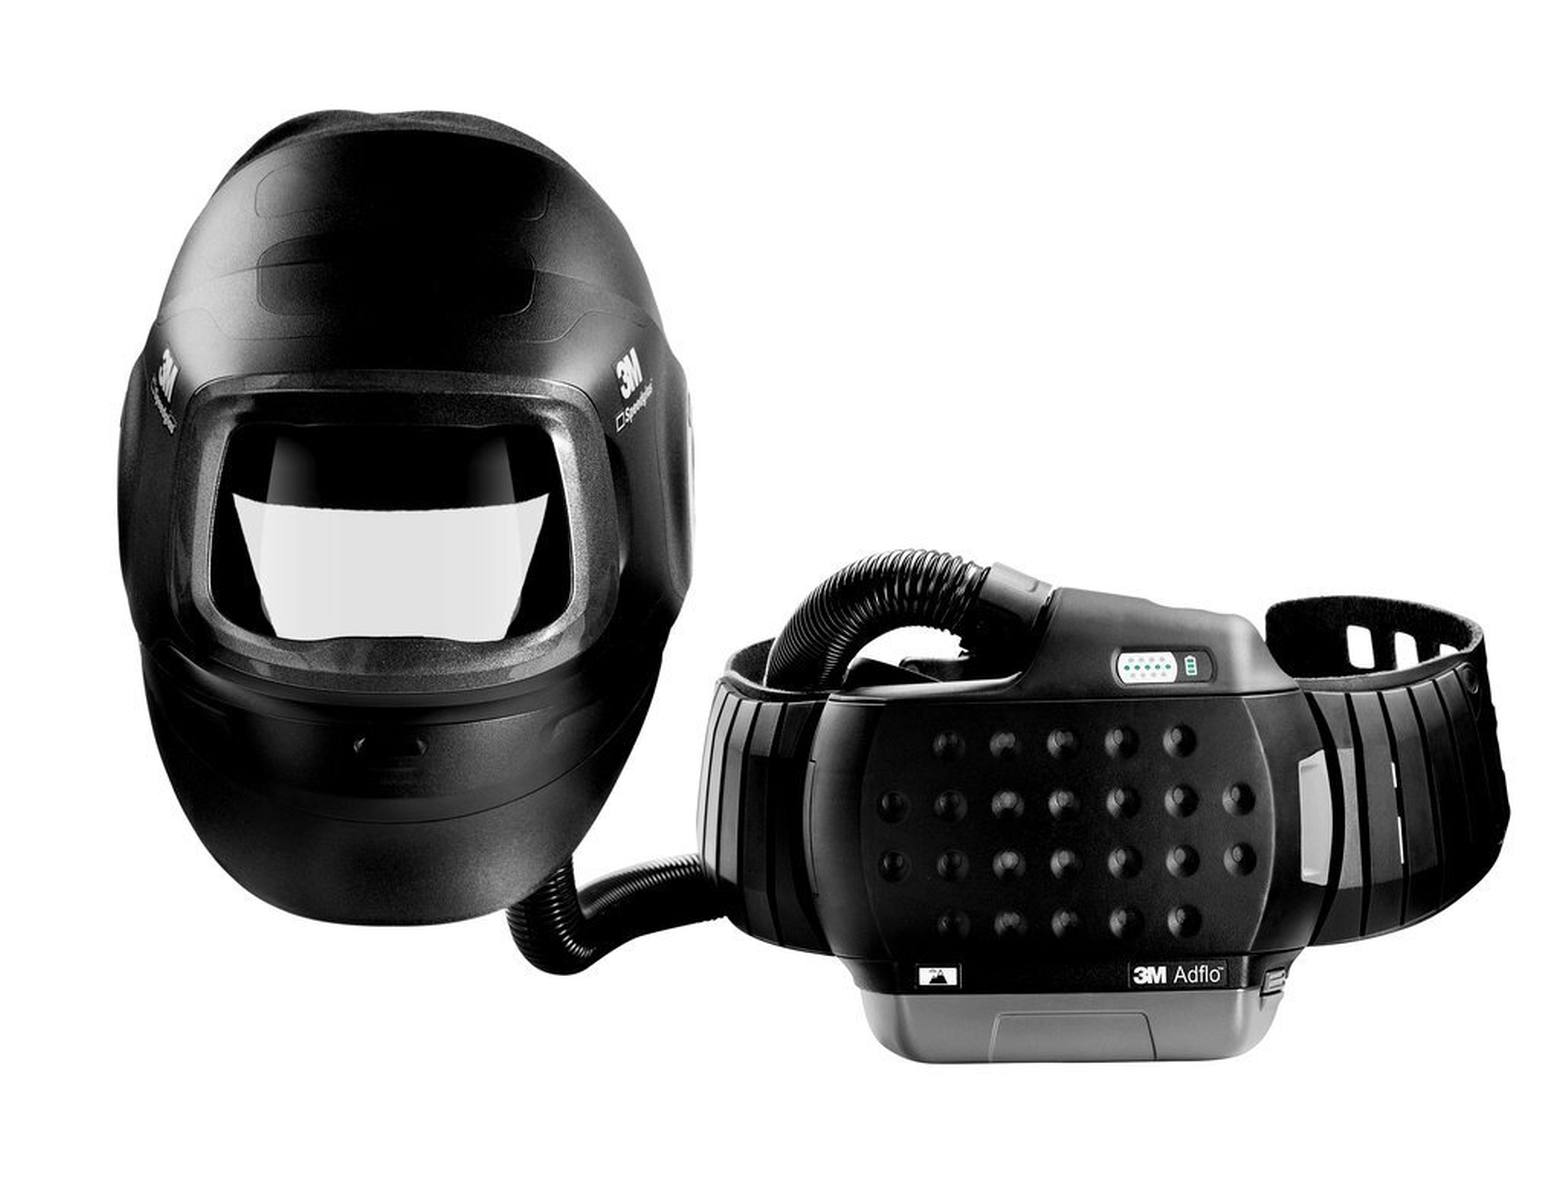 3M Speedglas Hochleistungs-Schweißmaske G5-01 mit 3M Adflo Gebläseatemschutz, Hochleistungsbatterie und Aufbewahrungstasche, ohne Schweißfilter, H617800